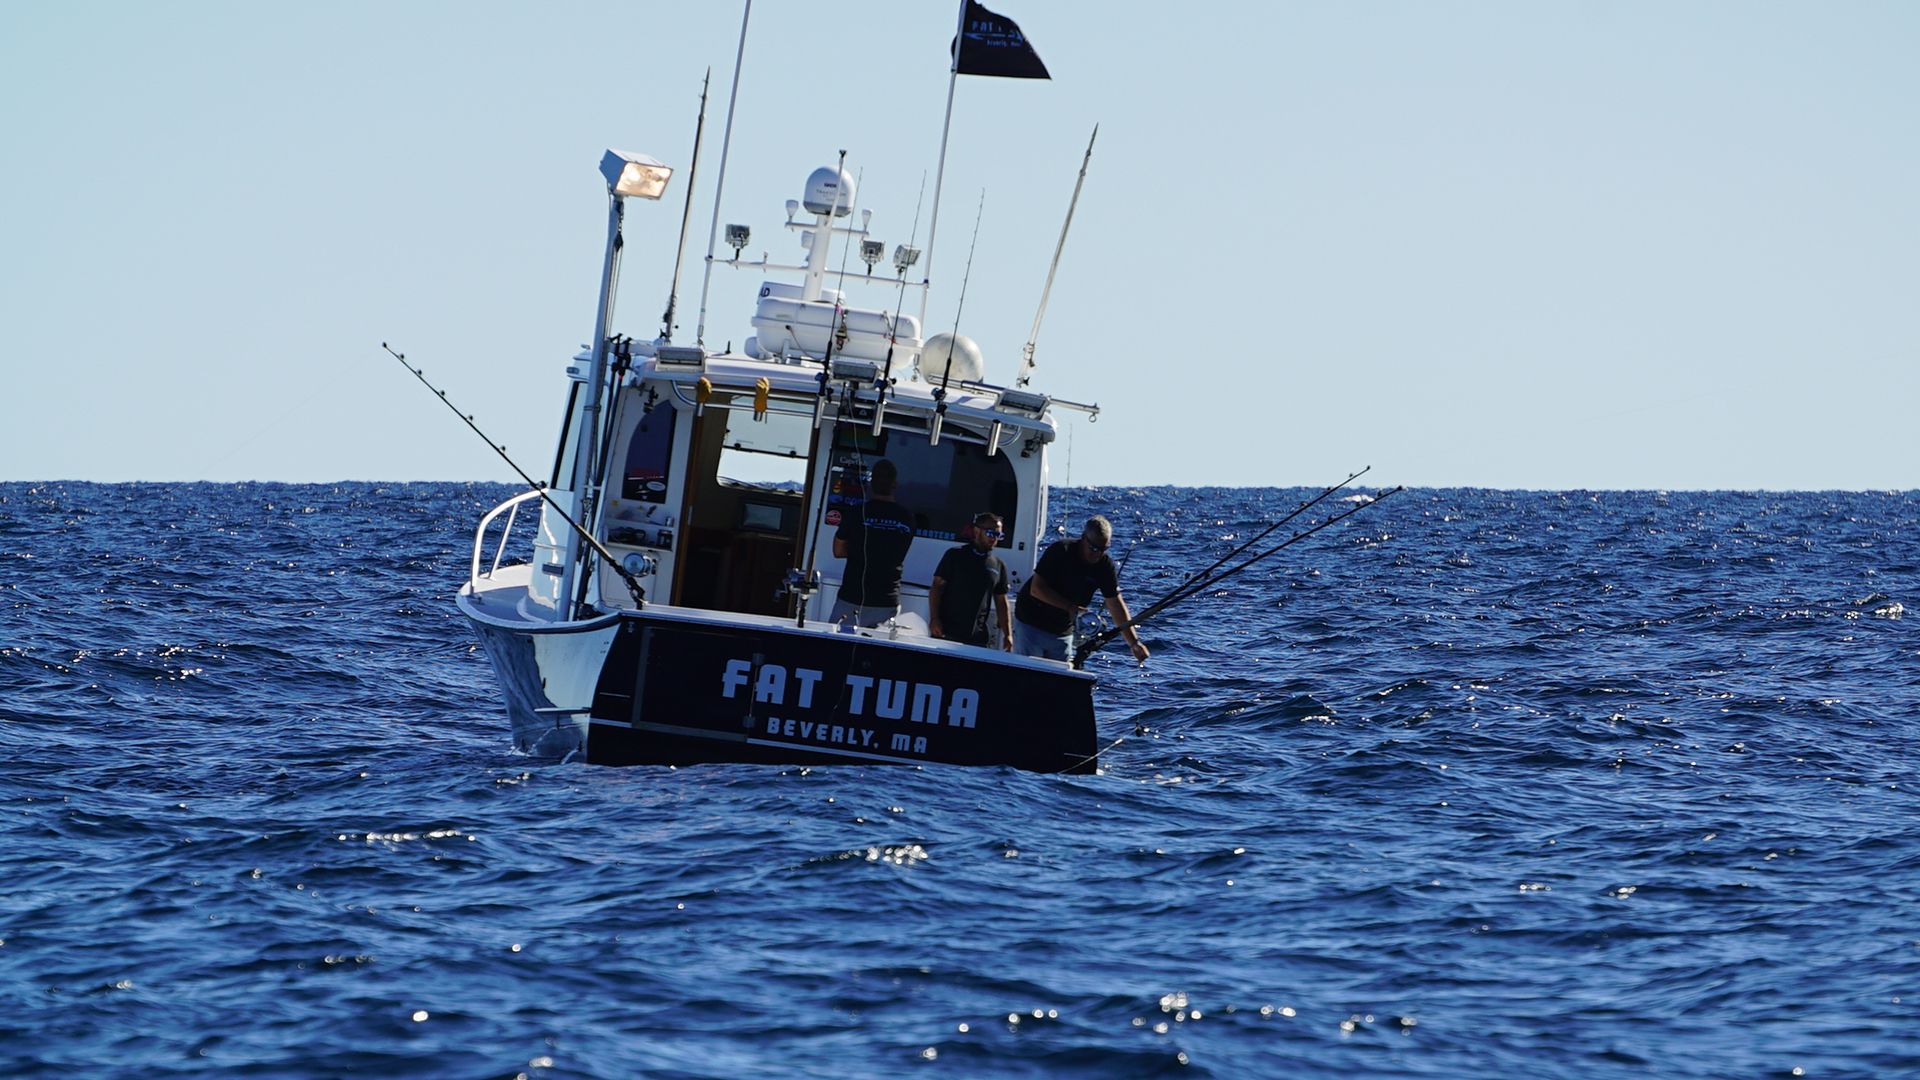 على متن السفينة Fat Tuna (من اليسار إلى اليمين)، يعمل... [Photo of the day - فبراير 2022]